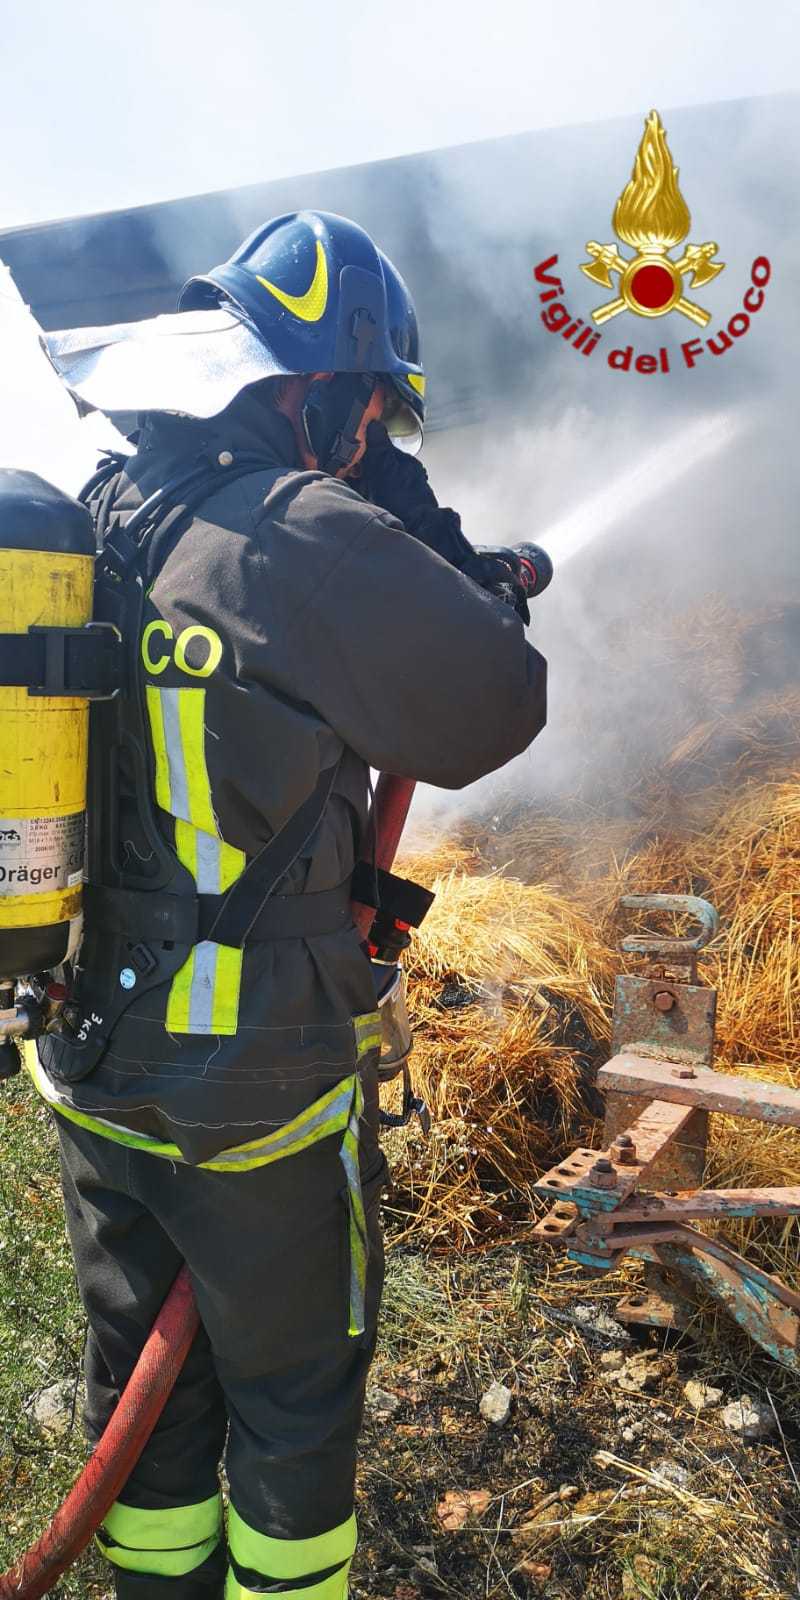 Crotone: divampato fienile, il tempestivo intervento dei VVF evitano incendio abitazione